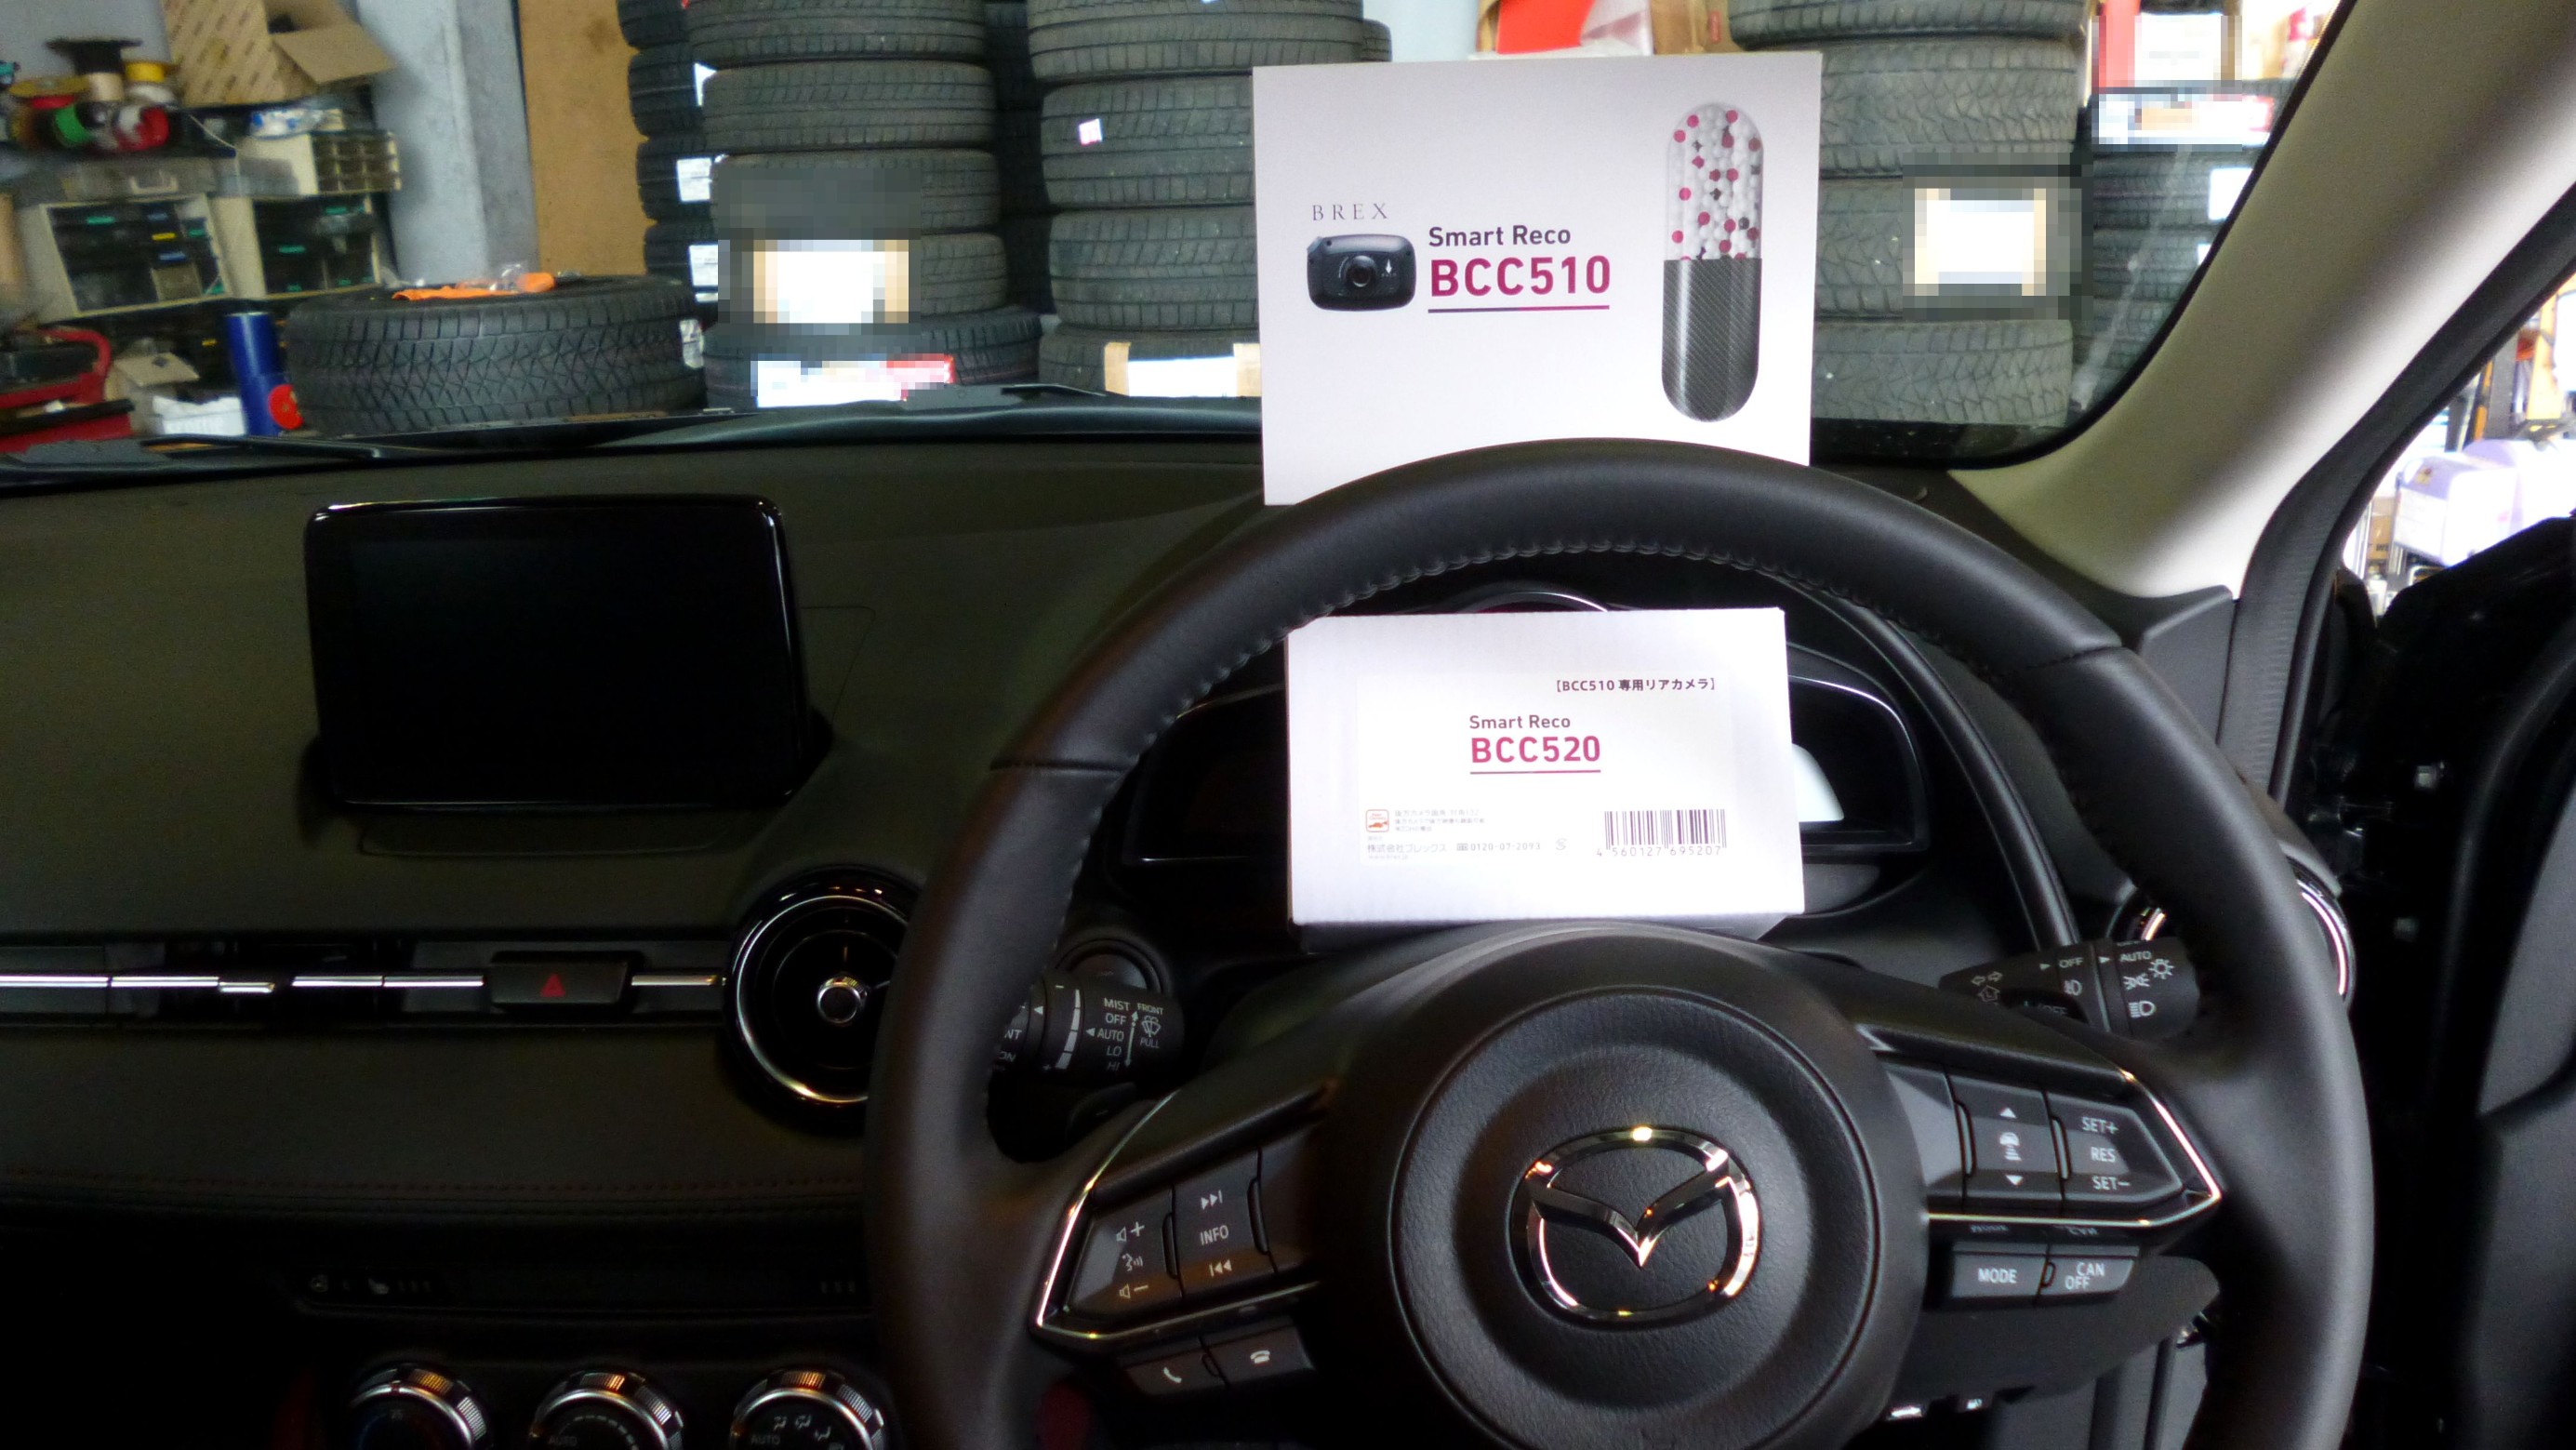 Brex ドライブレコーダー Smart Reco c510 リアカメラ c5 取付作業 マツダ Cx 3 マツダ Cx 3 Av カーナビ ドライブレコーダー Etc Av カーナビ ドライブレコーダー Etc オーディオ取付 Feel Book スタイルコクピット フィール 車の